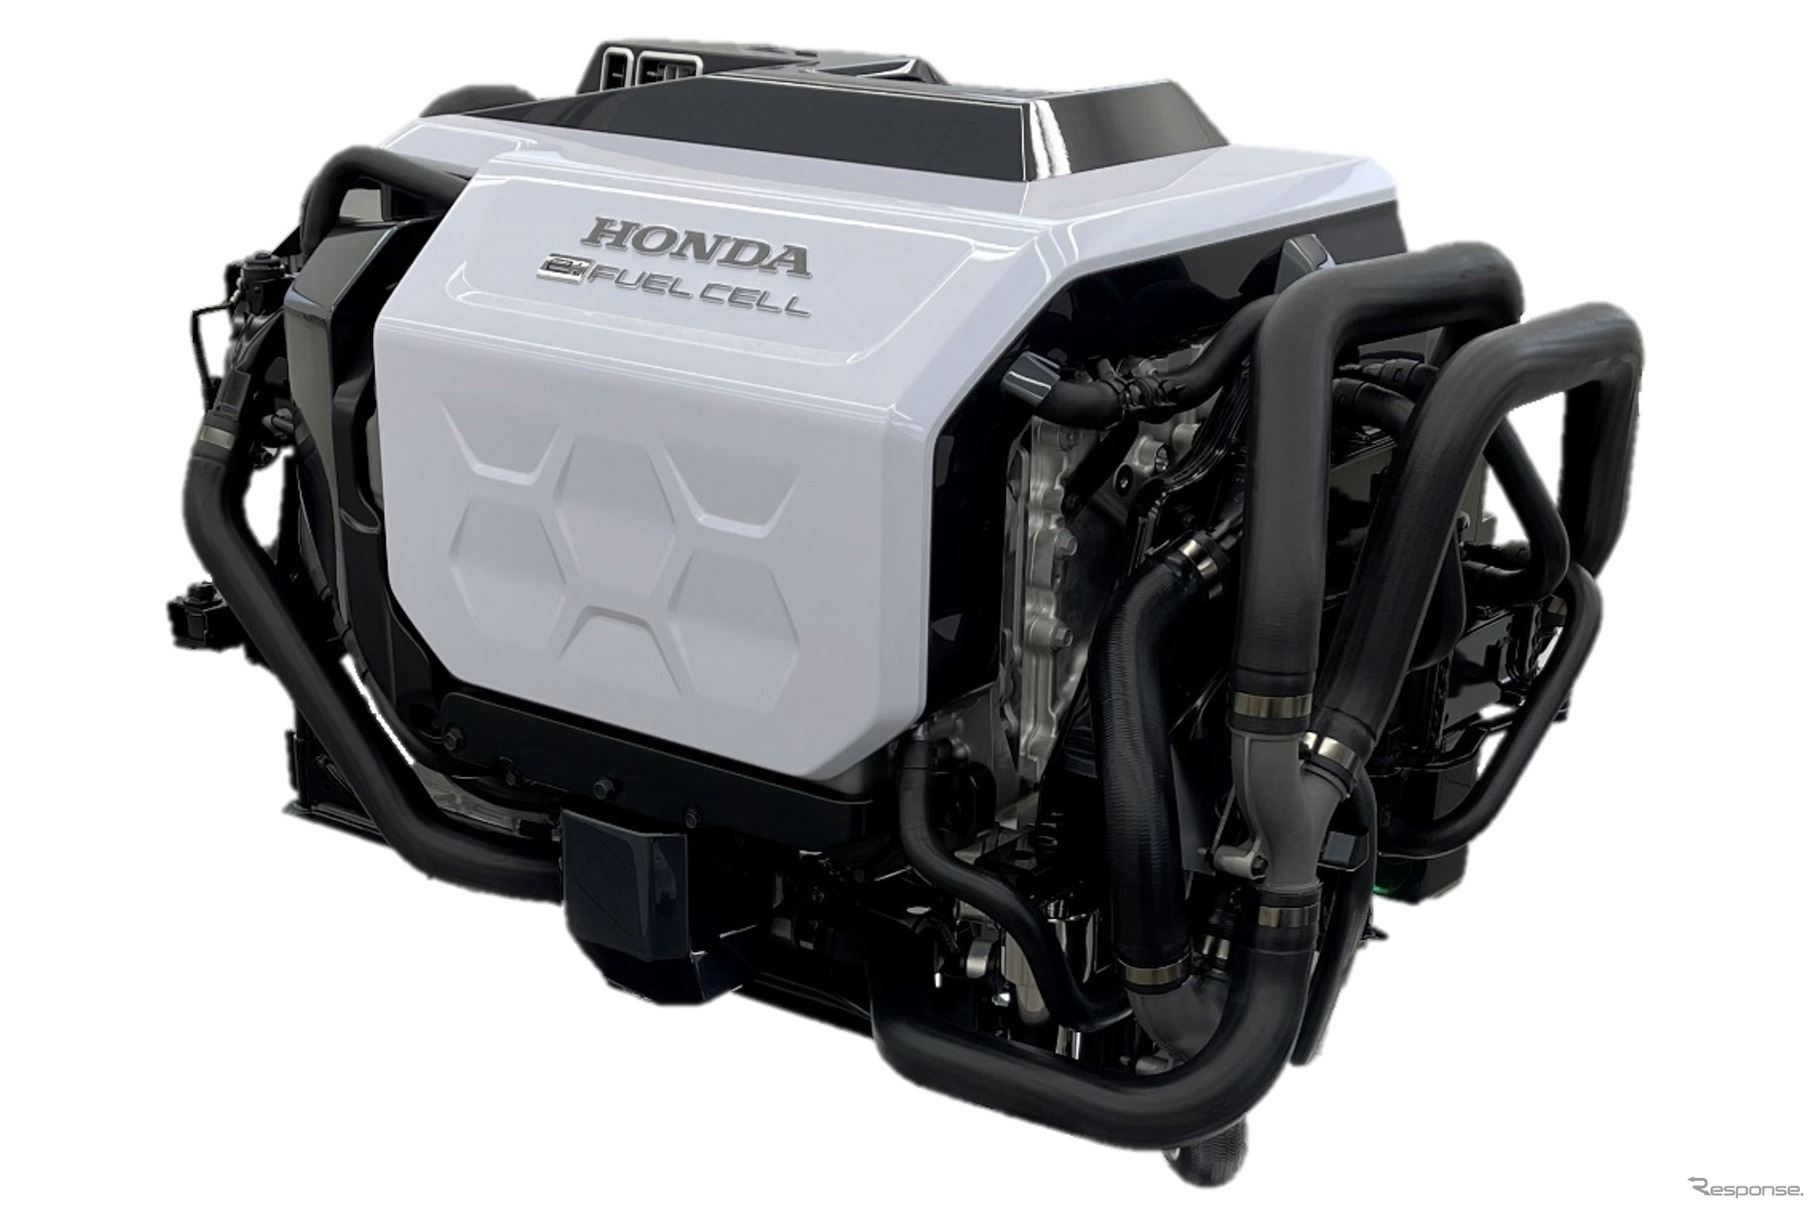 Honda燃料電池モジュール プロトタイプ